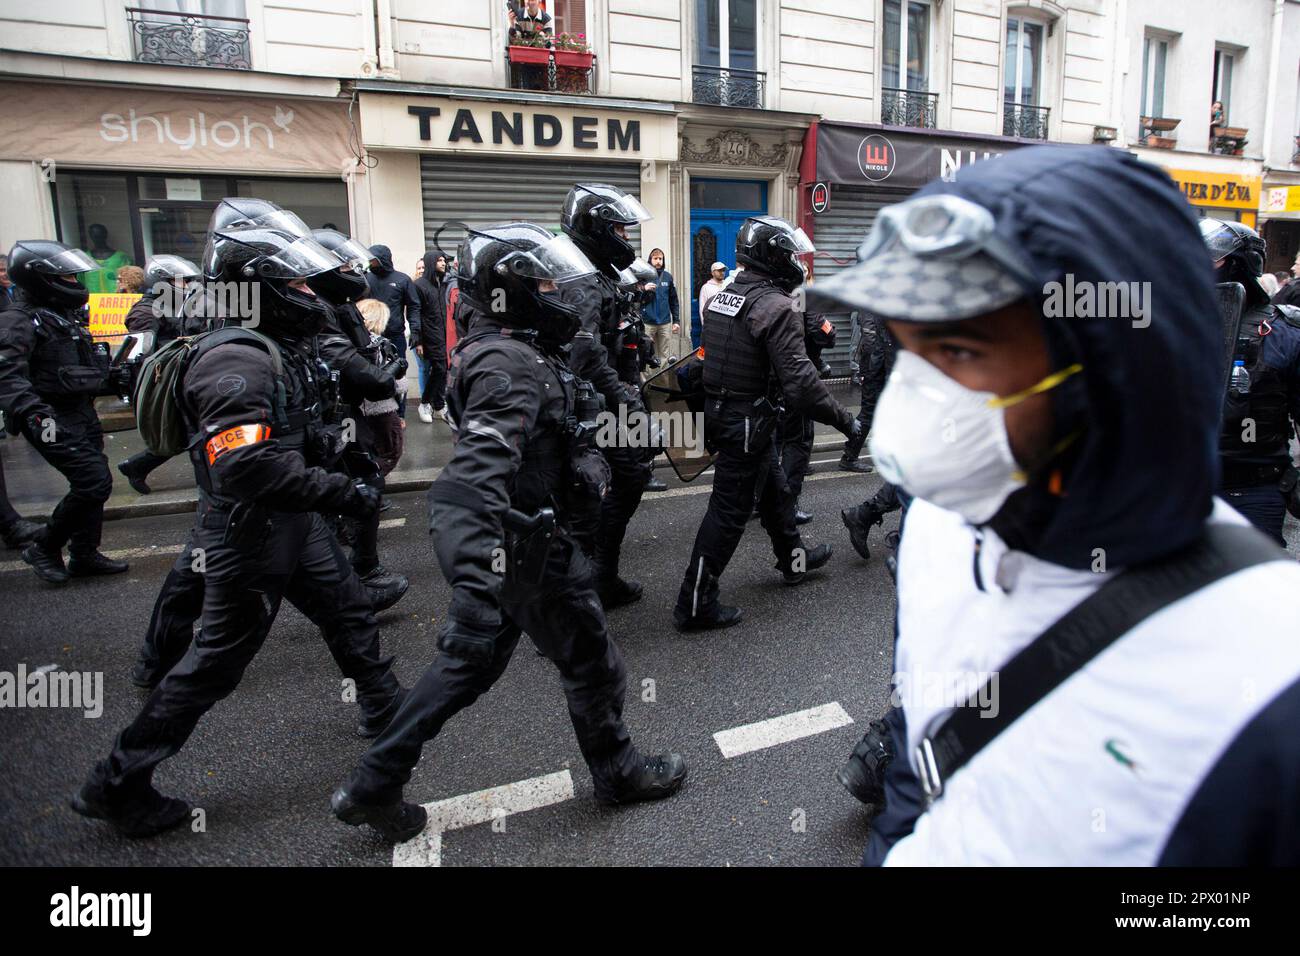 Demonstranten und französische Polizei treffen während der Bürgerkriegsaufstände am 1. Mai 2023 im Zentrum von Paris aufeinander. Viele kamen zu Wort, um ihre Abneigung gegen Präsident Macron und seine derzeitige Politik zum Ausdruck zu bringen. Auf dem Bild ist ein Demonstrant zu sehen, der an einer Gruppe französischer Polizei vorbeiläuft, während sie im Einsatz sind. Stockfoto